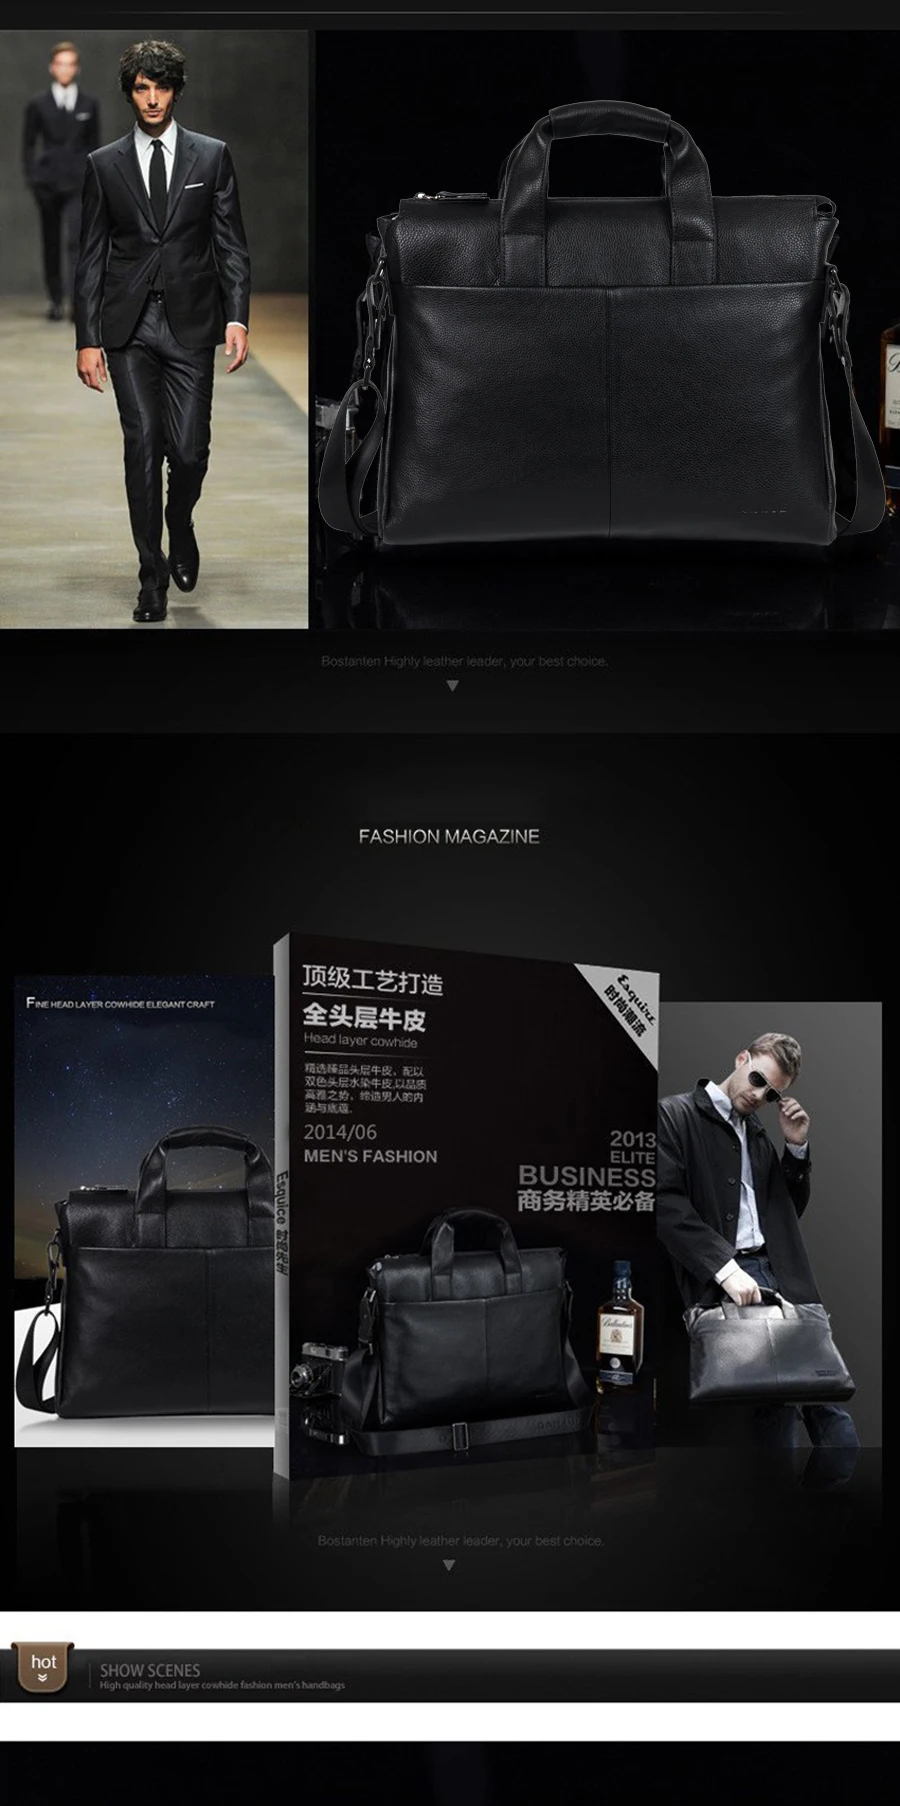 Мужские портфели из натуральной кожи Danjue, брендовые высококачественные деловые сумки, двухцветная натуральная мягкая кожаная сумка для ноутбука